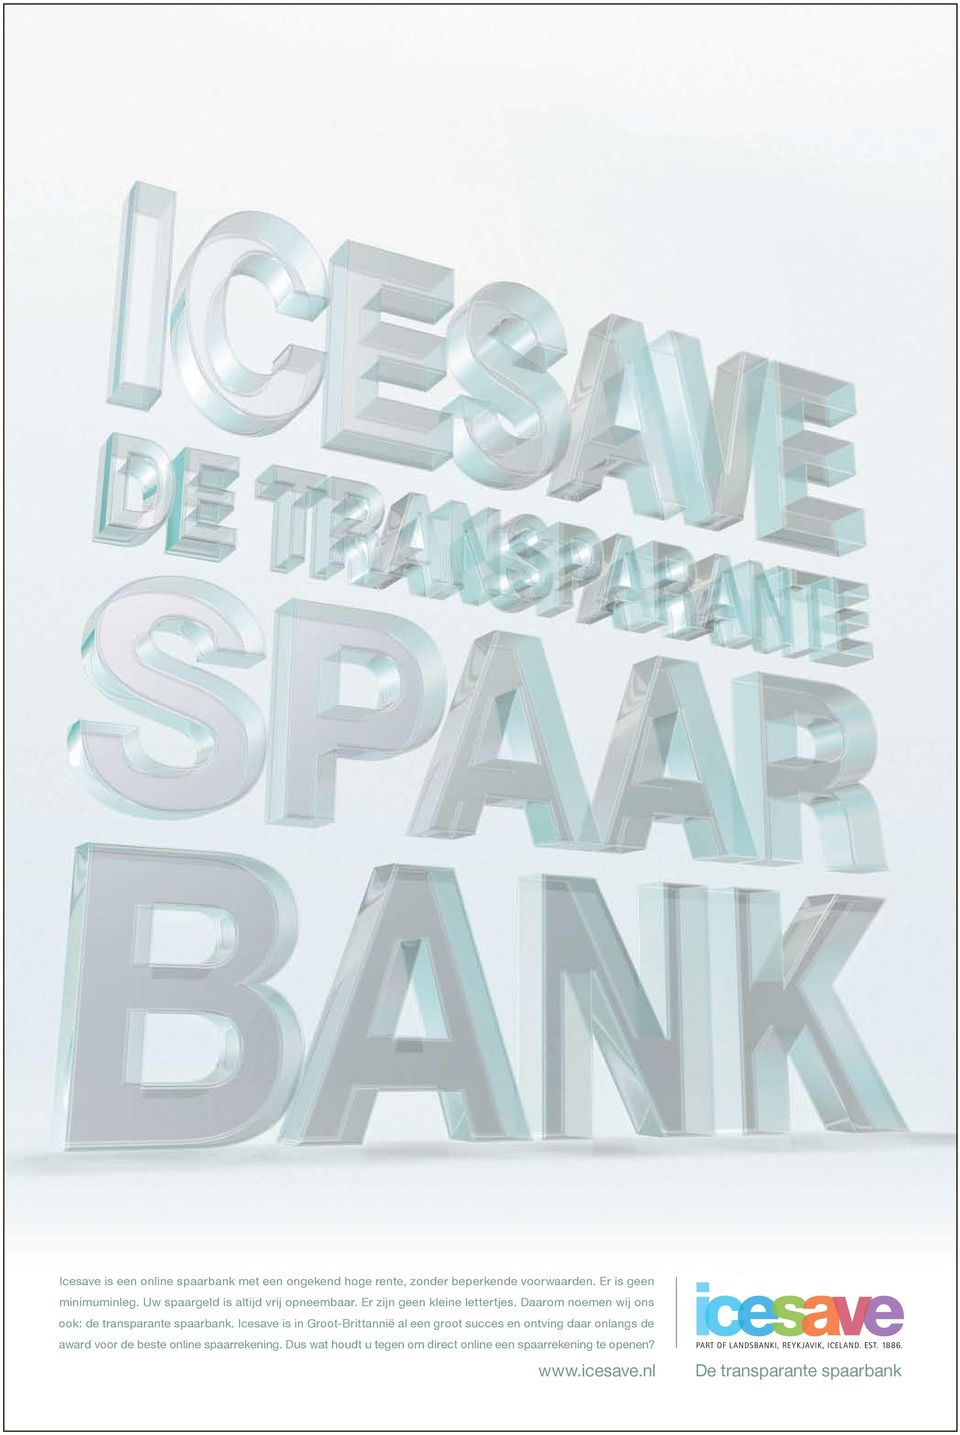 Icesave is in Groot-Brittannië al een groot succes en ontving daar onlangs de award voor de beste online spaarrekening.